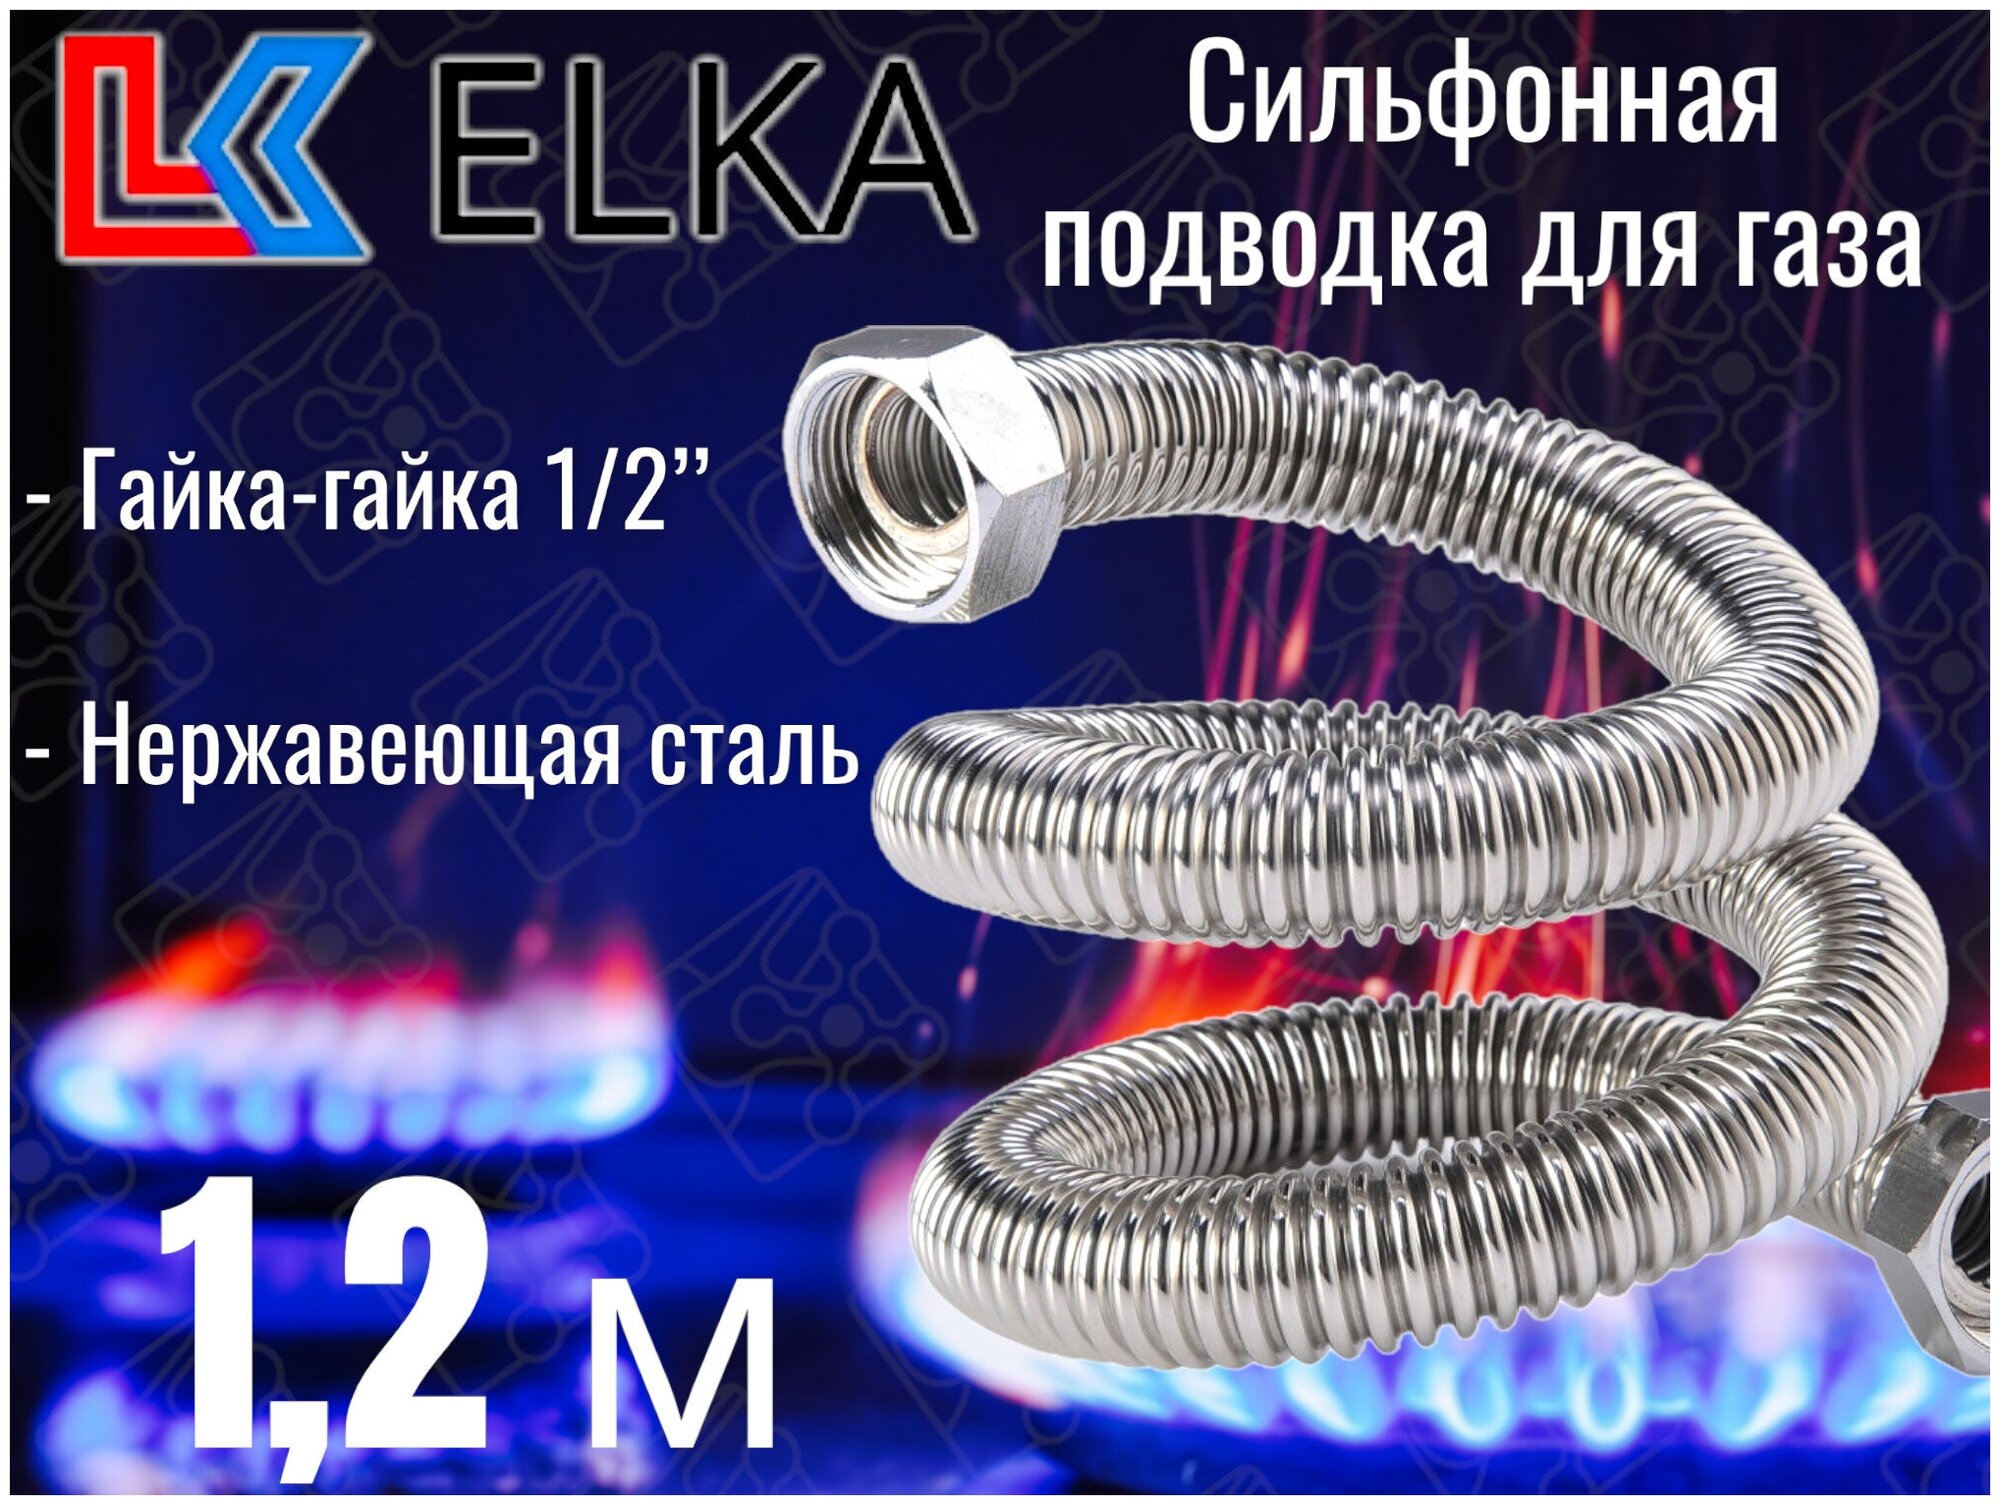 Сильфонная подводка для газа 1,2 м ELKA 1/2" г/г (в/в) / Шланг газовый / Подводка для газовых систем 120 см